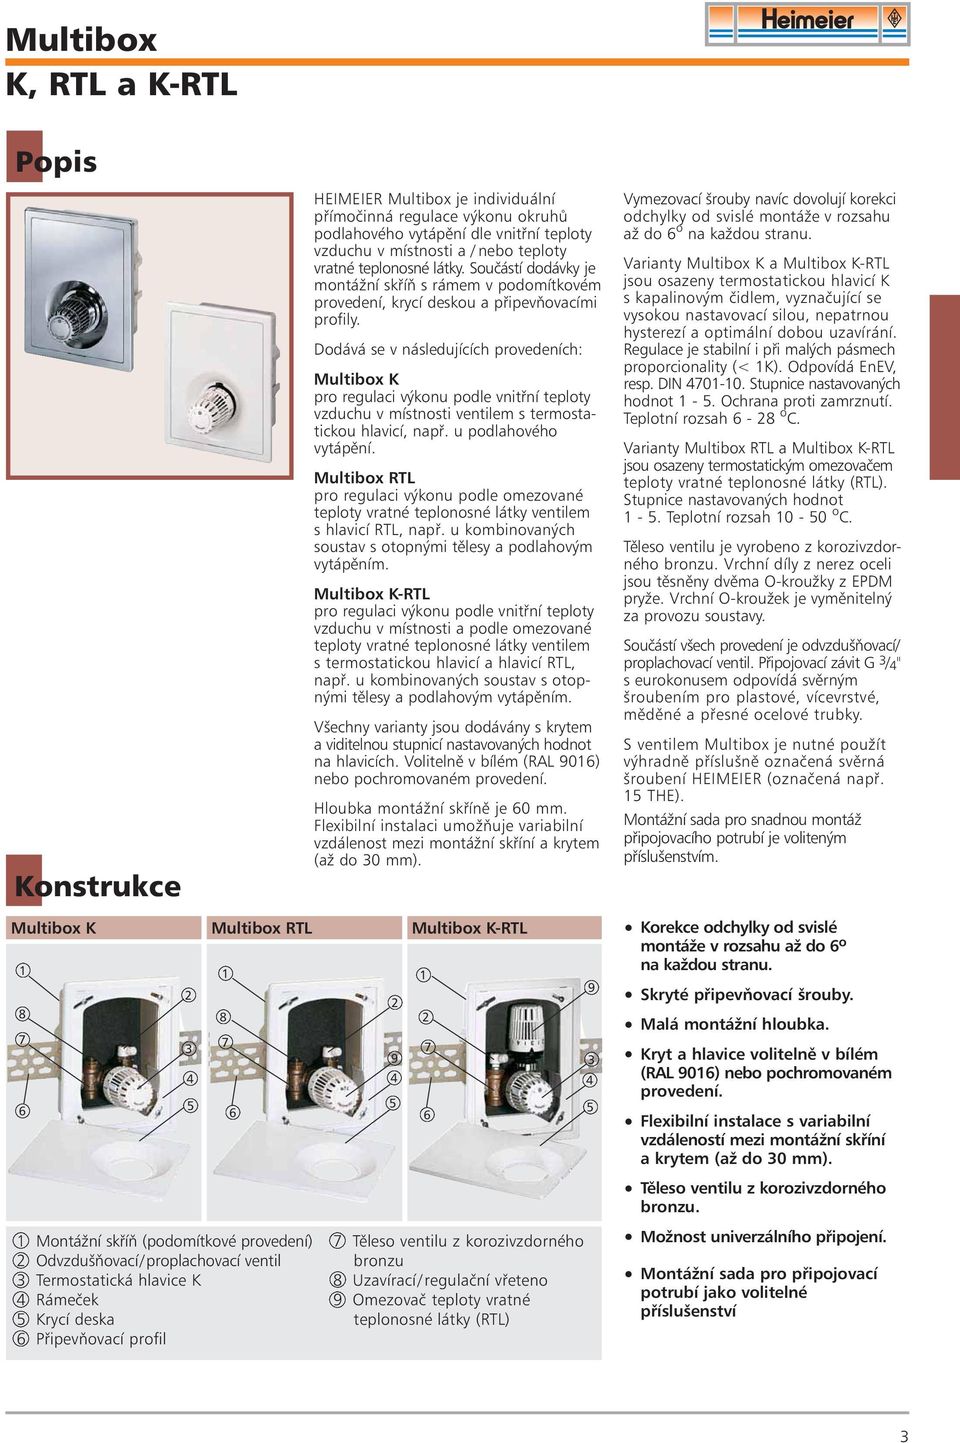 Dodává se v následujících provedeních: Multibox K pro regulaci výkonu podle vnitøní teploty vzduchu v místnosti ventilem s termostatickou hlavicí, napø. u podlahového vytápìní.